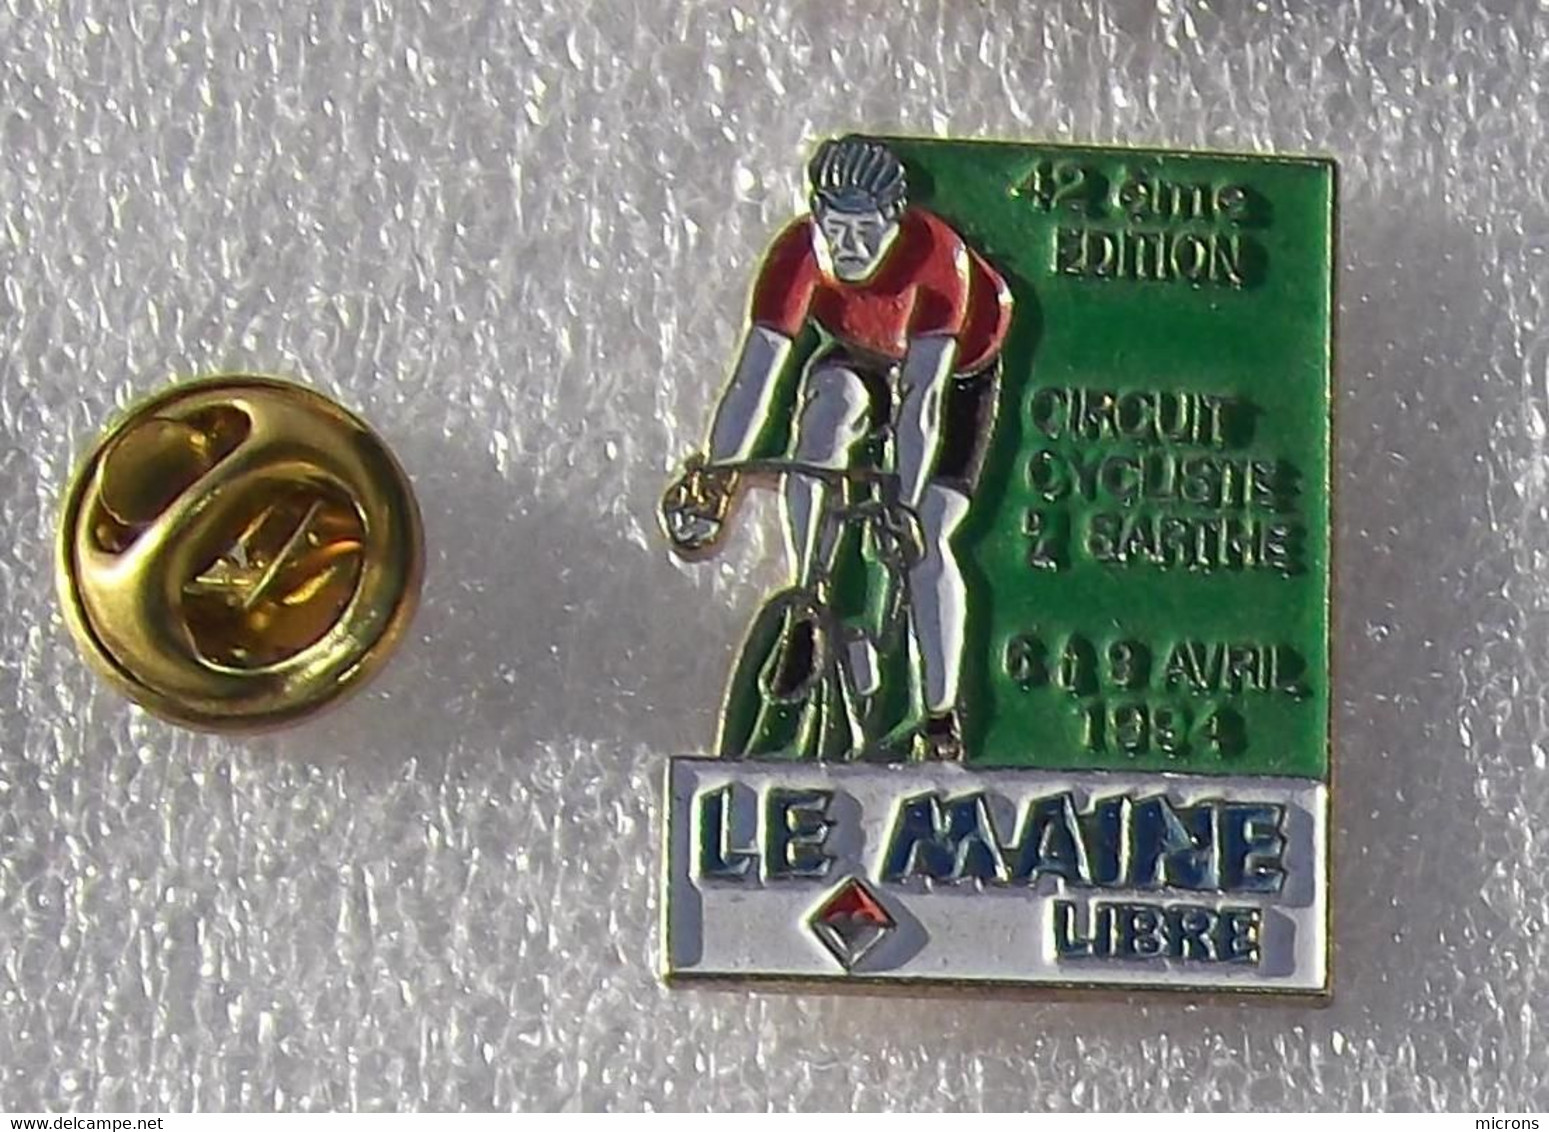 CYCLISME 42 ème EDITION CIRCUIT CYCLISTE DE LA SARTHE 6  AU 9 AVRIL 1994 LE MAINE LIBRE     FFFF    19 - Cyclisme